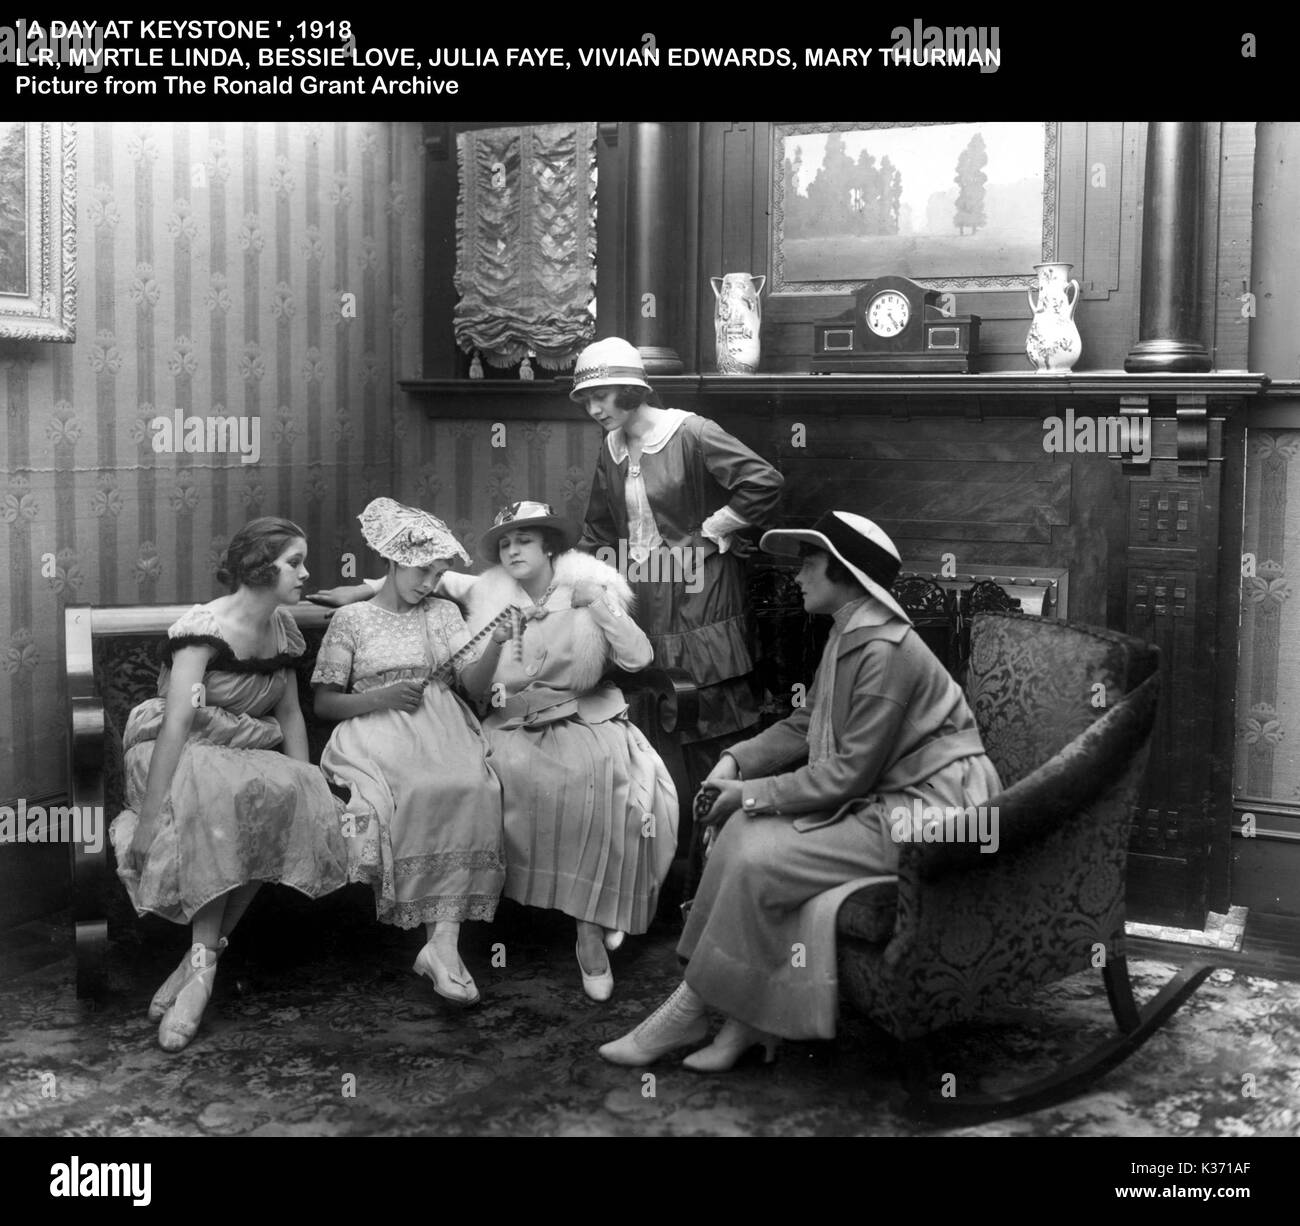 Une journée à Keystone, 1918 L-R, MYRTLE LINDA, BESSIE LOVE, JULIA FAYE, VIVIAN EDWARDS, MARIE THURMAN FILM FILM DE NITRATE DE MANUTENTION Banque D'Images